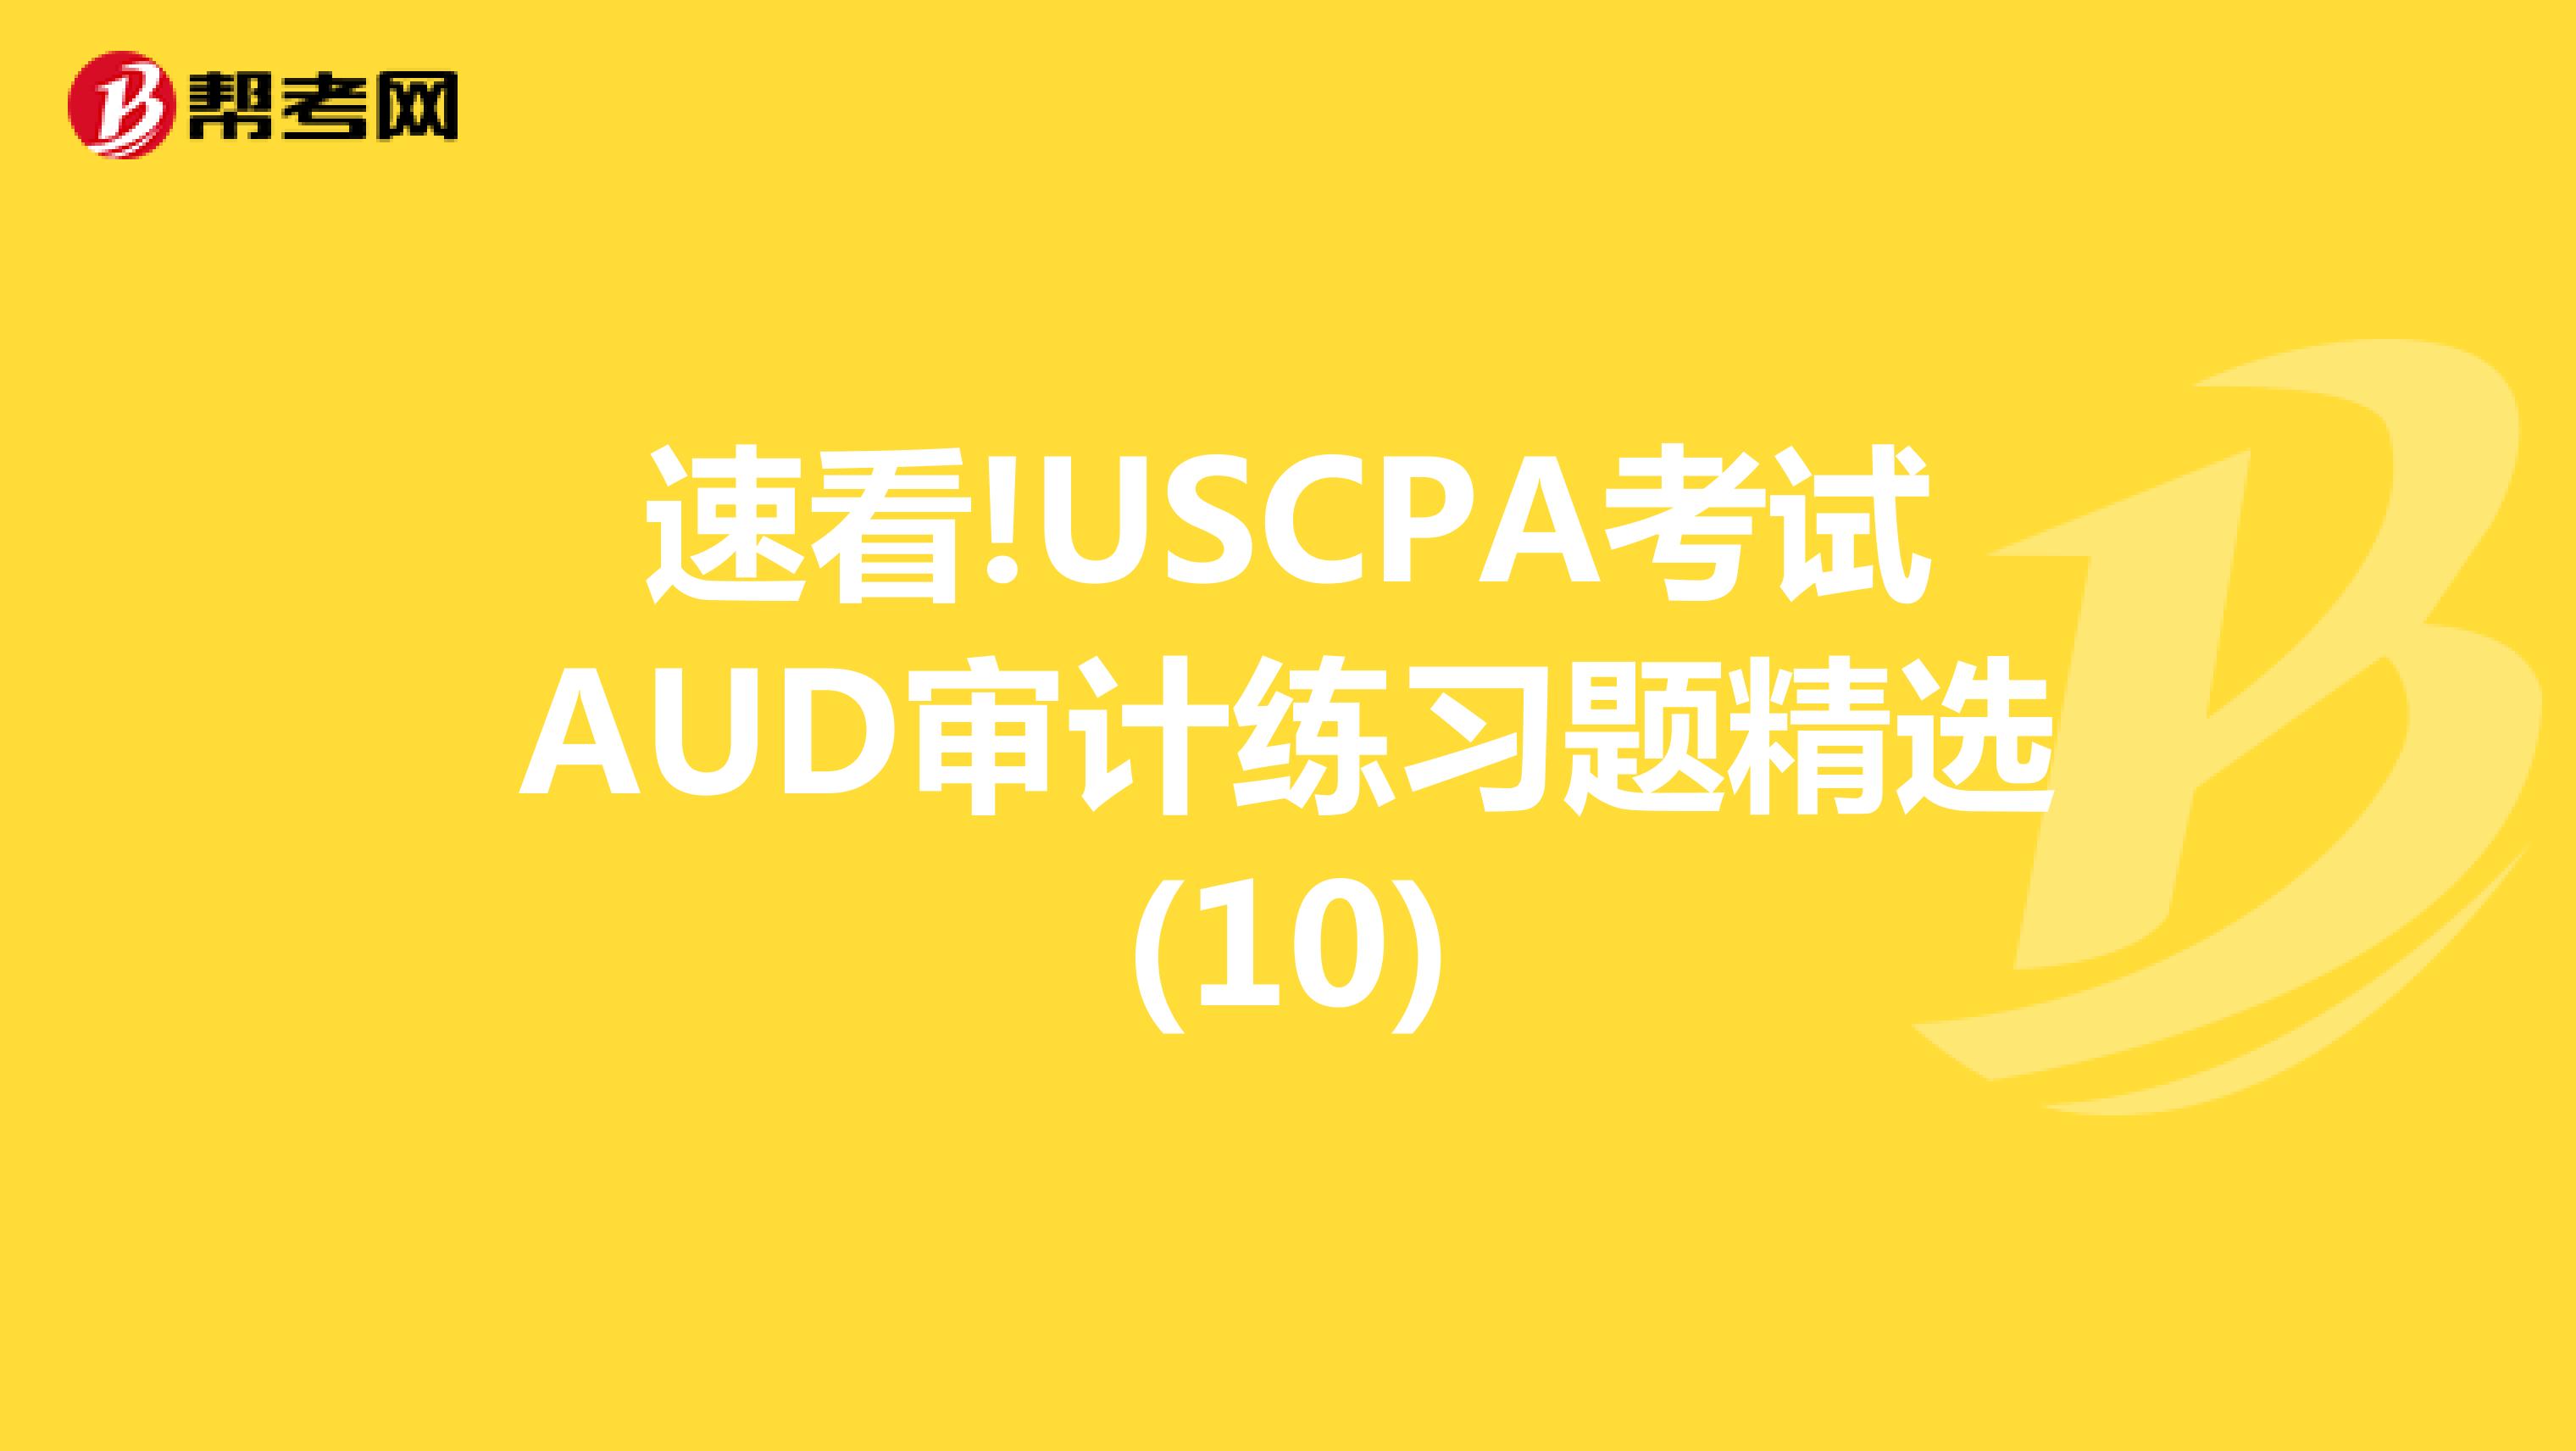 速看!USCPA考试AUD审计练习题精选(10)